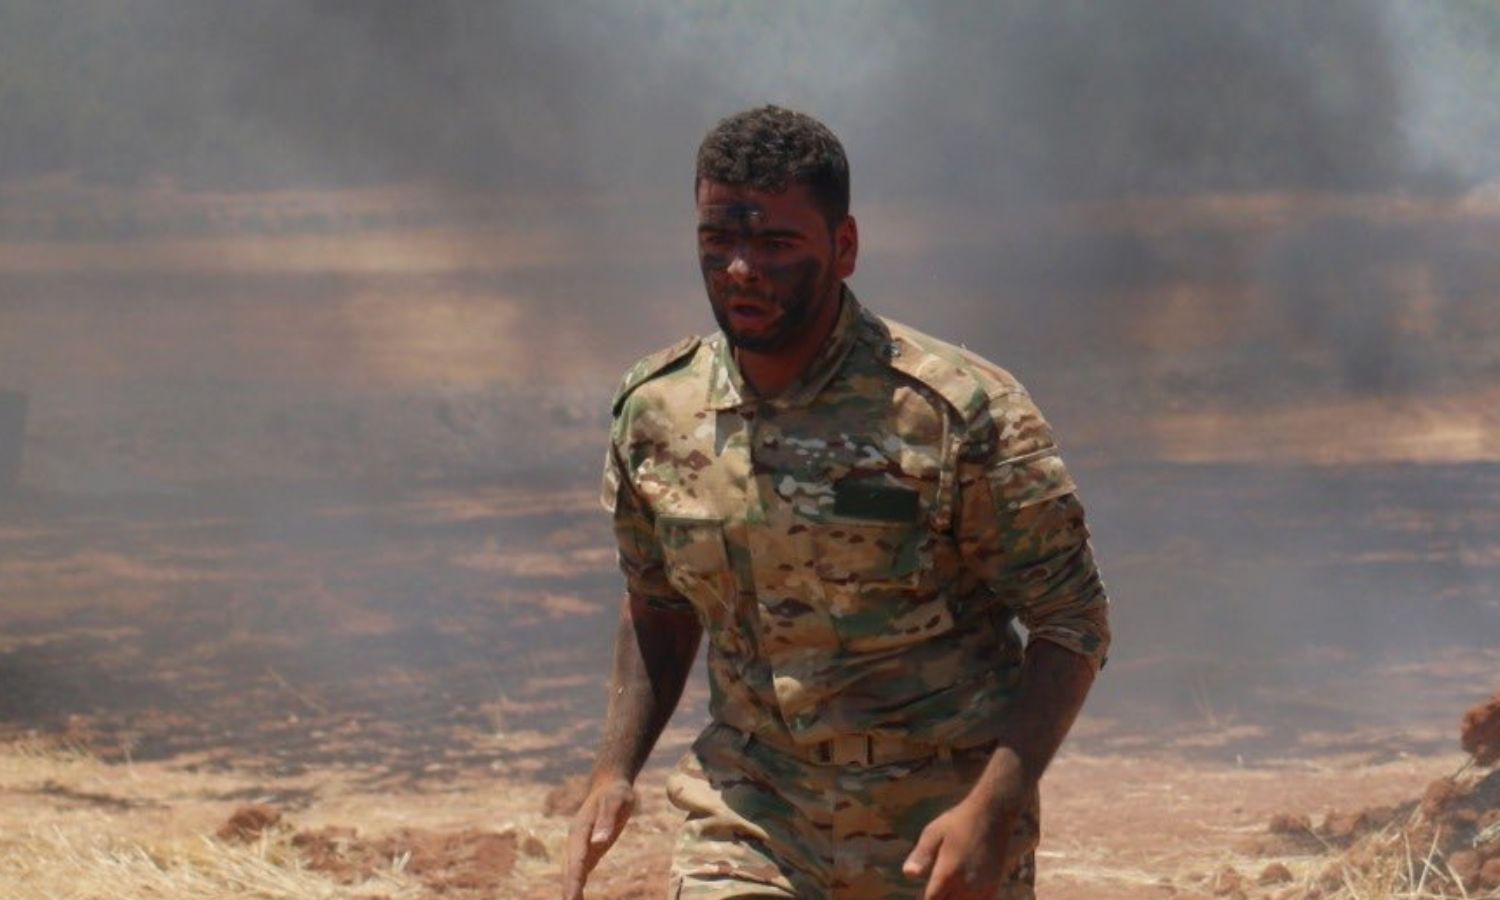 مقاتل في فرقة "السلطان مراد" التابعة لـ"الجيش الوطني السوري" في ريف حلب - تموز 2020 (فرقة السلطان مراد)